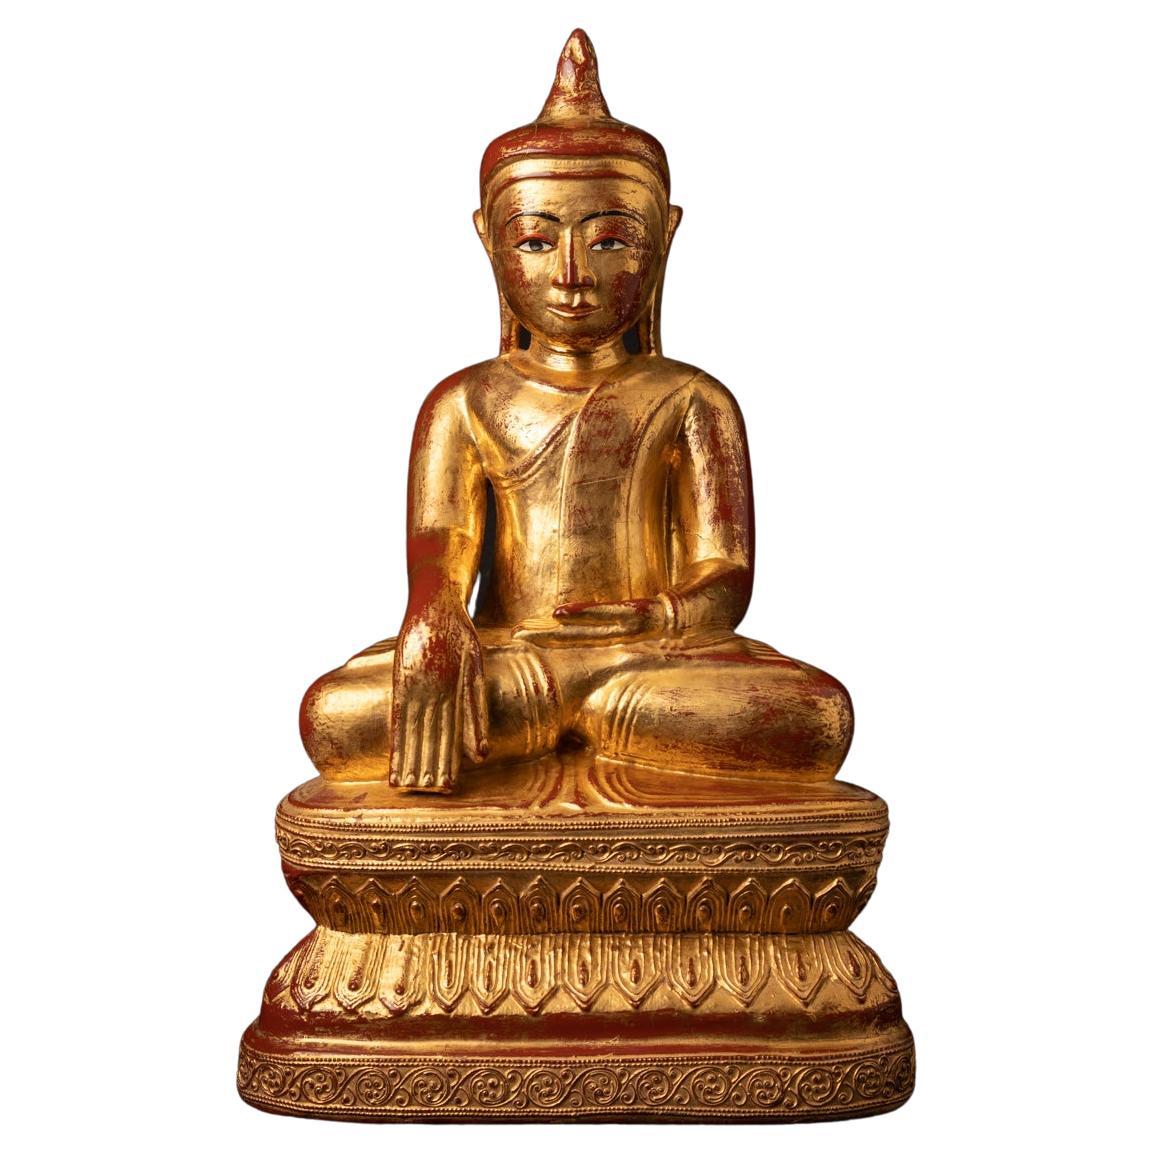 19th century antique wooden Burmese Buddha statue in Bhumisparsha Mudra